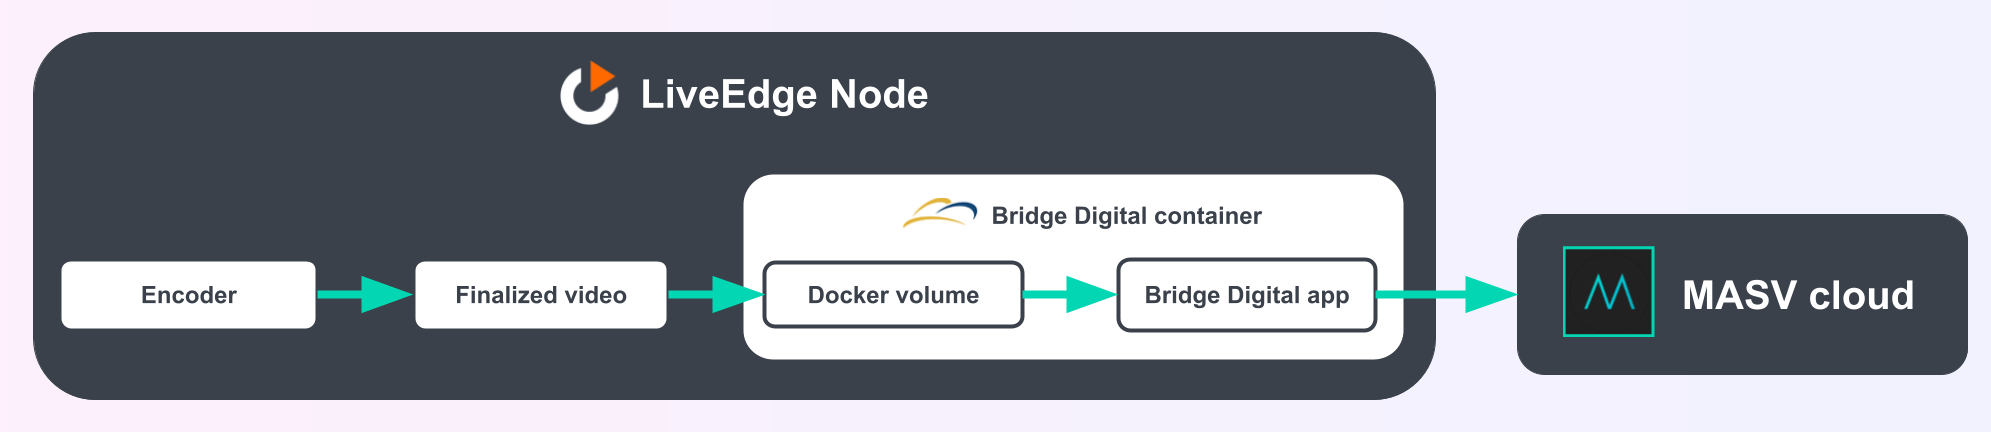 Diagrama de arquitectura de la aplicación Bridge Digital